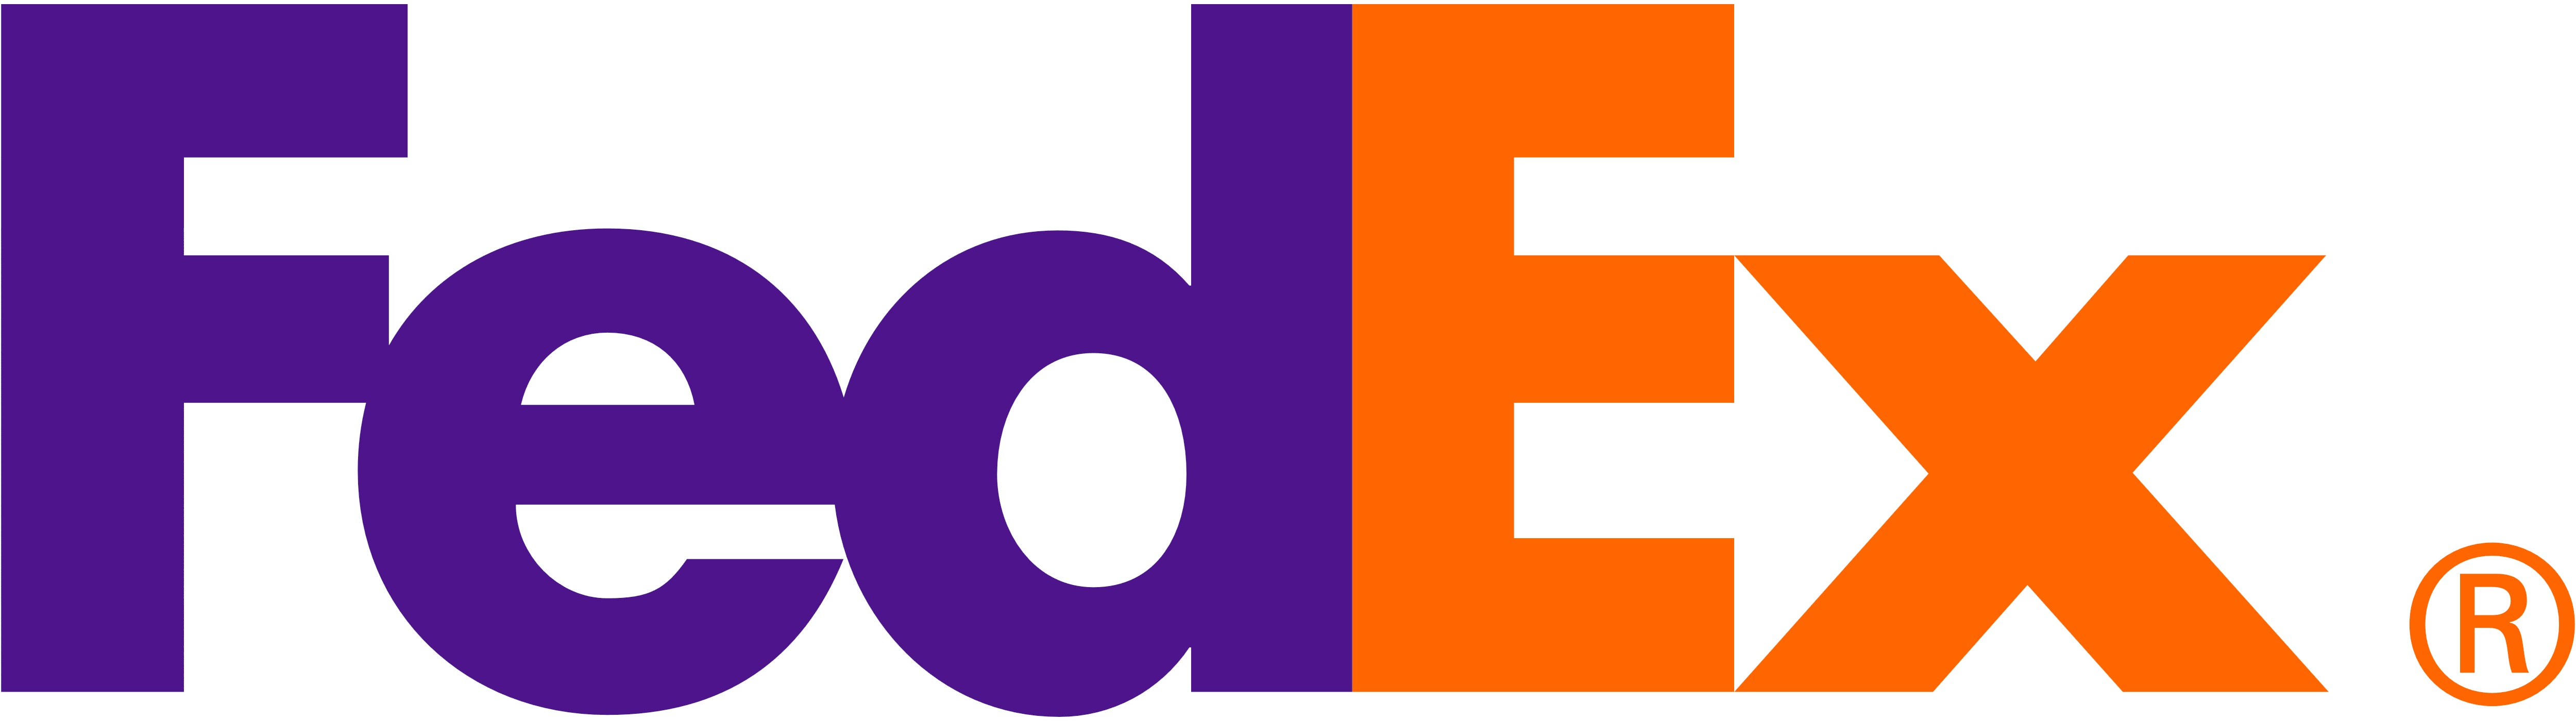 https://esg-projects.com/wp-content/uploads/2022/11/FedEx_logo_orange-purple.png